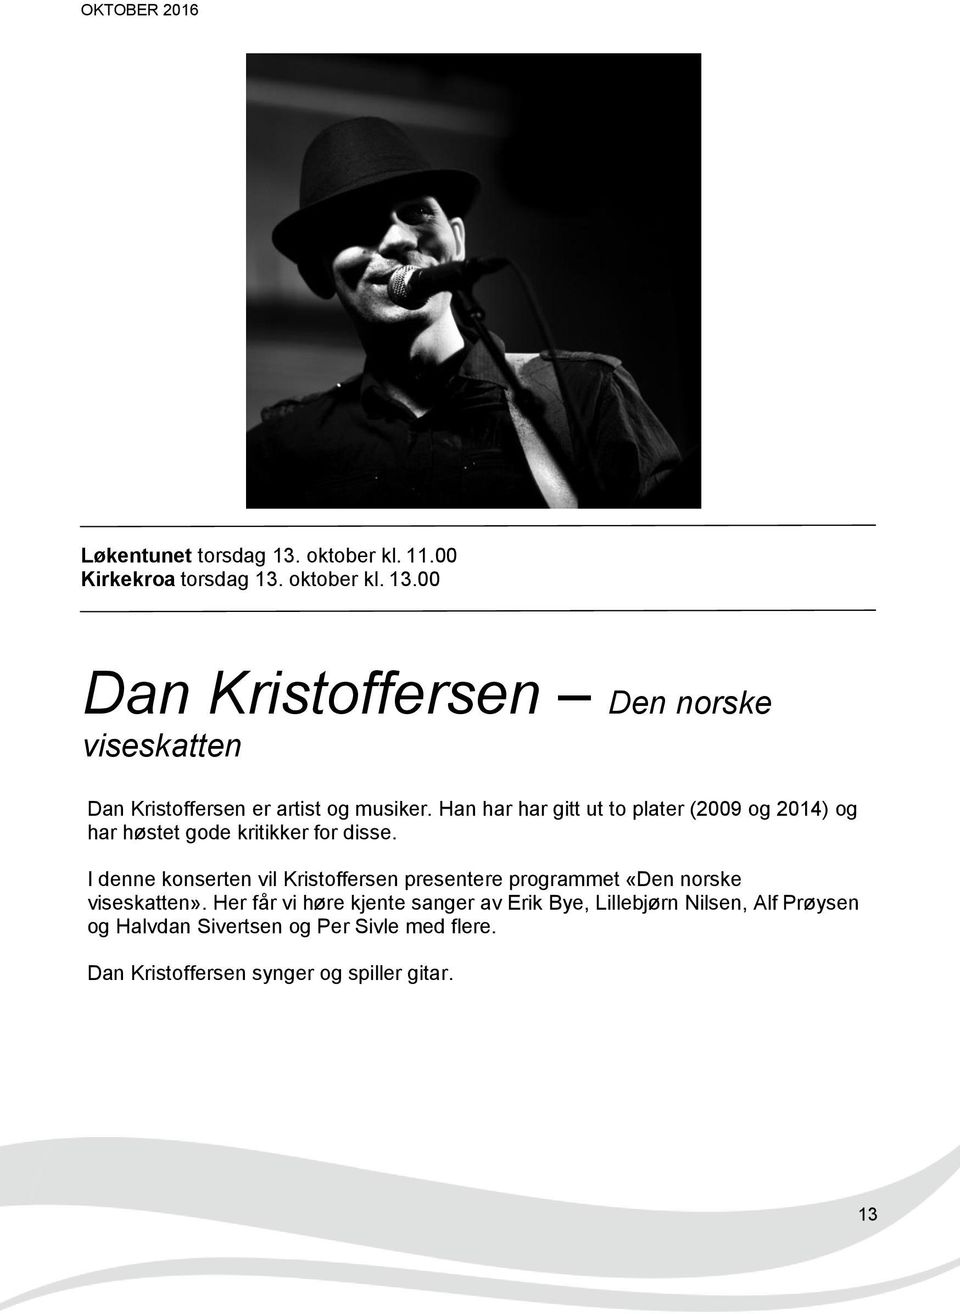 I denne konserten vil Kristoffersen presentere programmet «Den norske viseskatten».